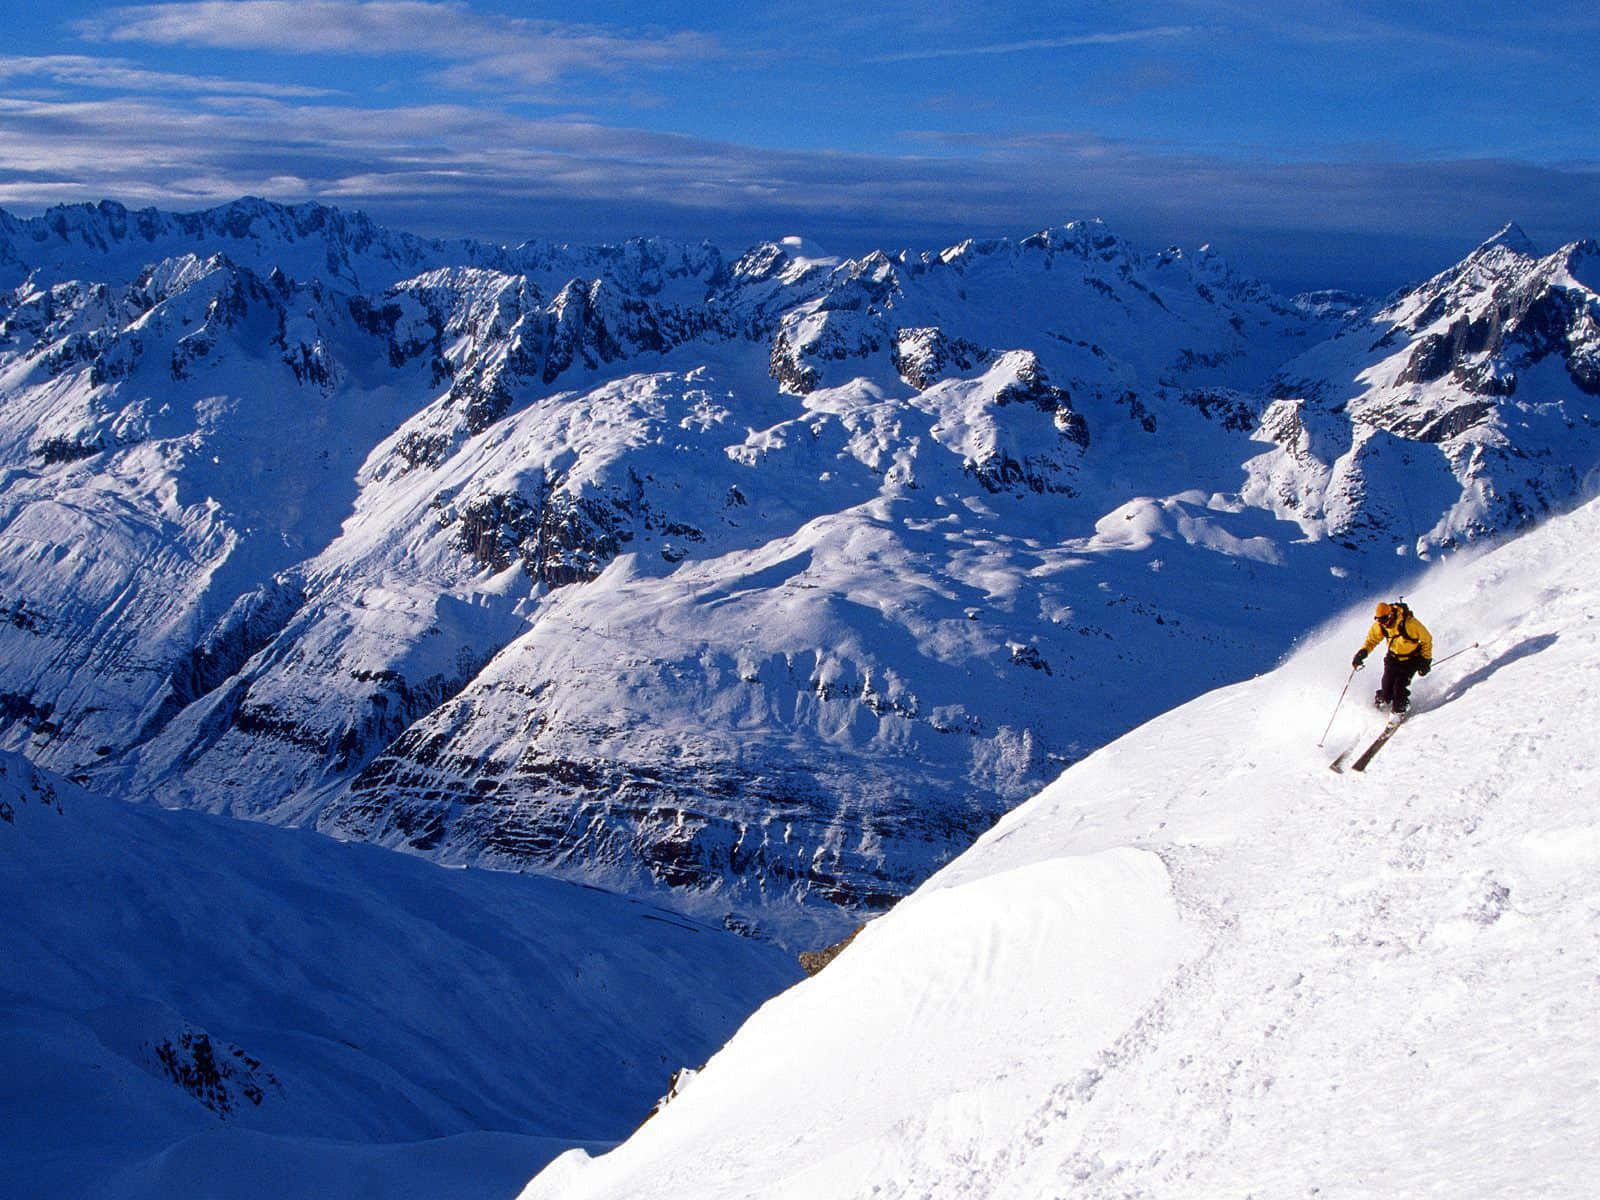 Macheine Pause Und Entspann Dich In Einem Wunderschönen Schneebedeckten Ski-gebirge. Wallpaper